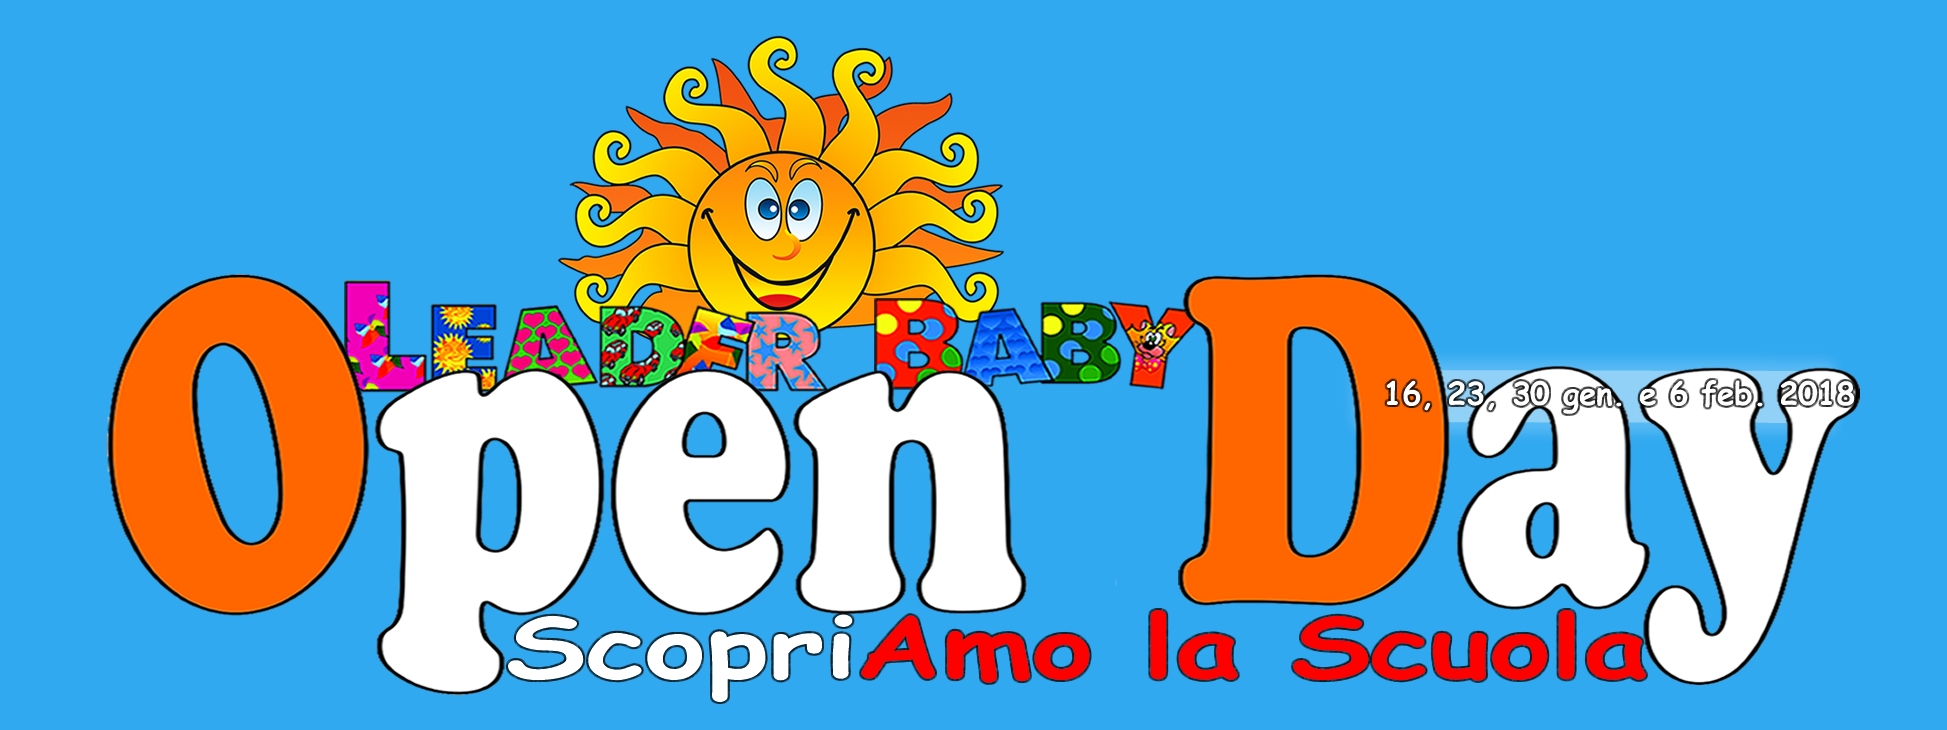 Open Day 2018 scuola primaria e dell'infanzia giorni e info evento.